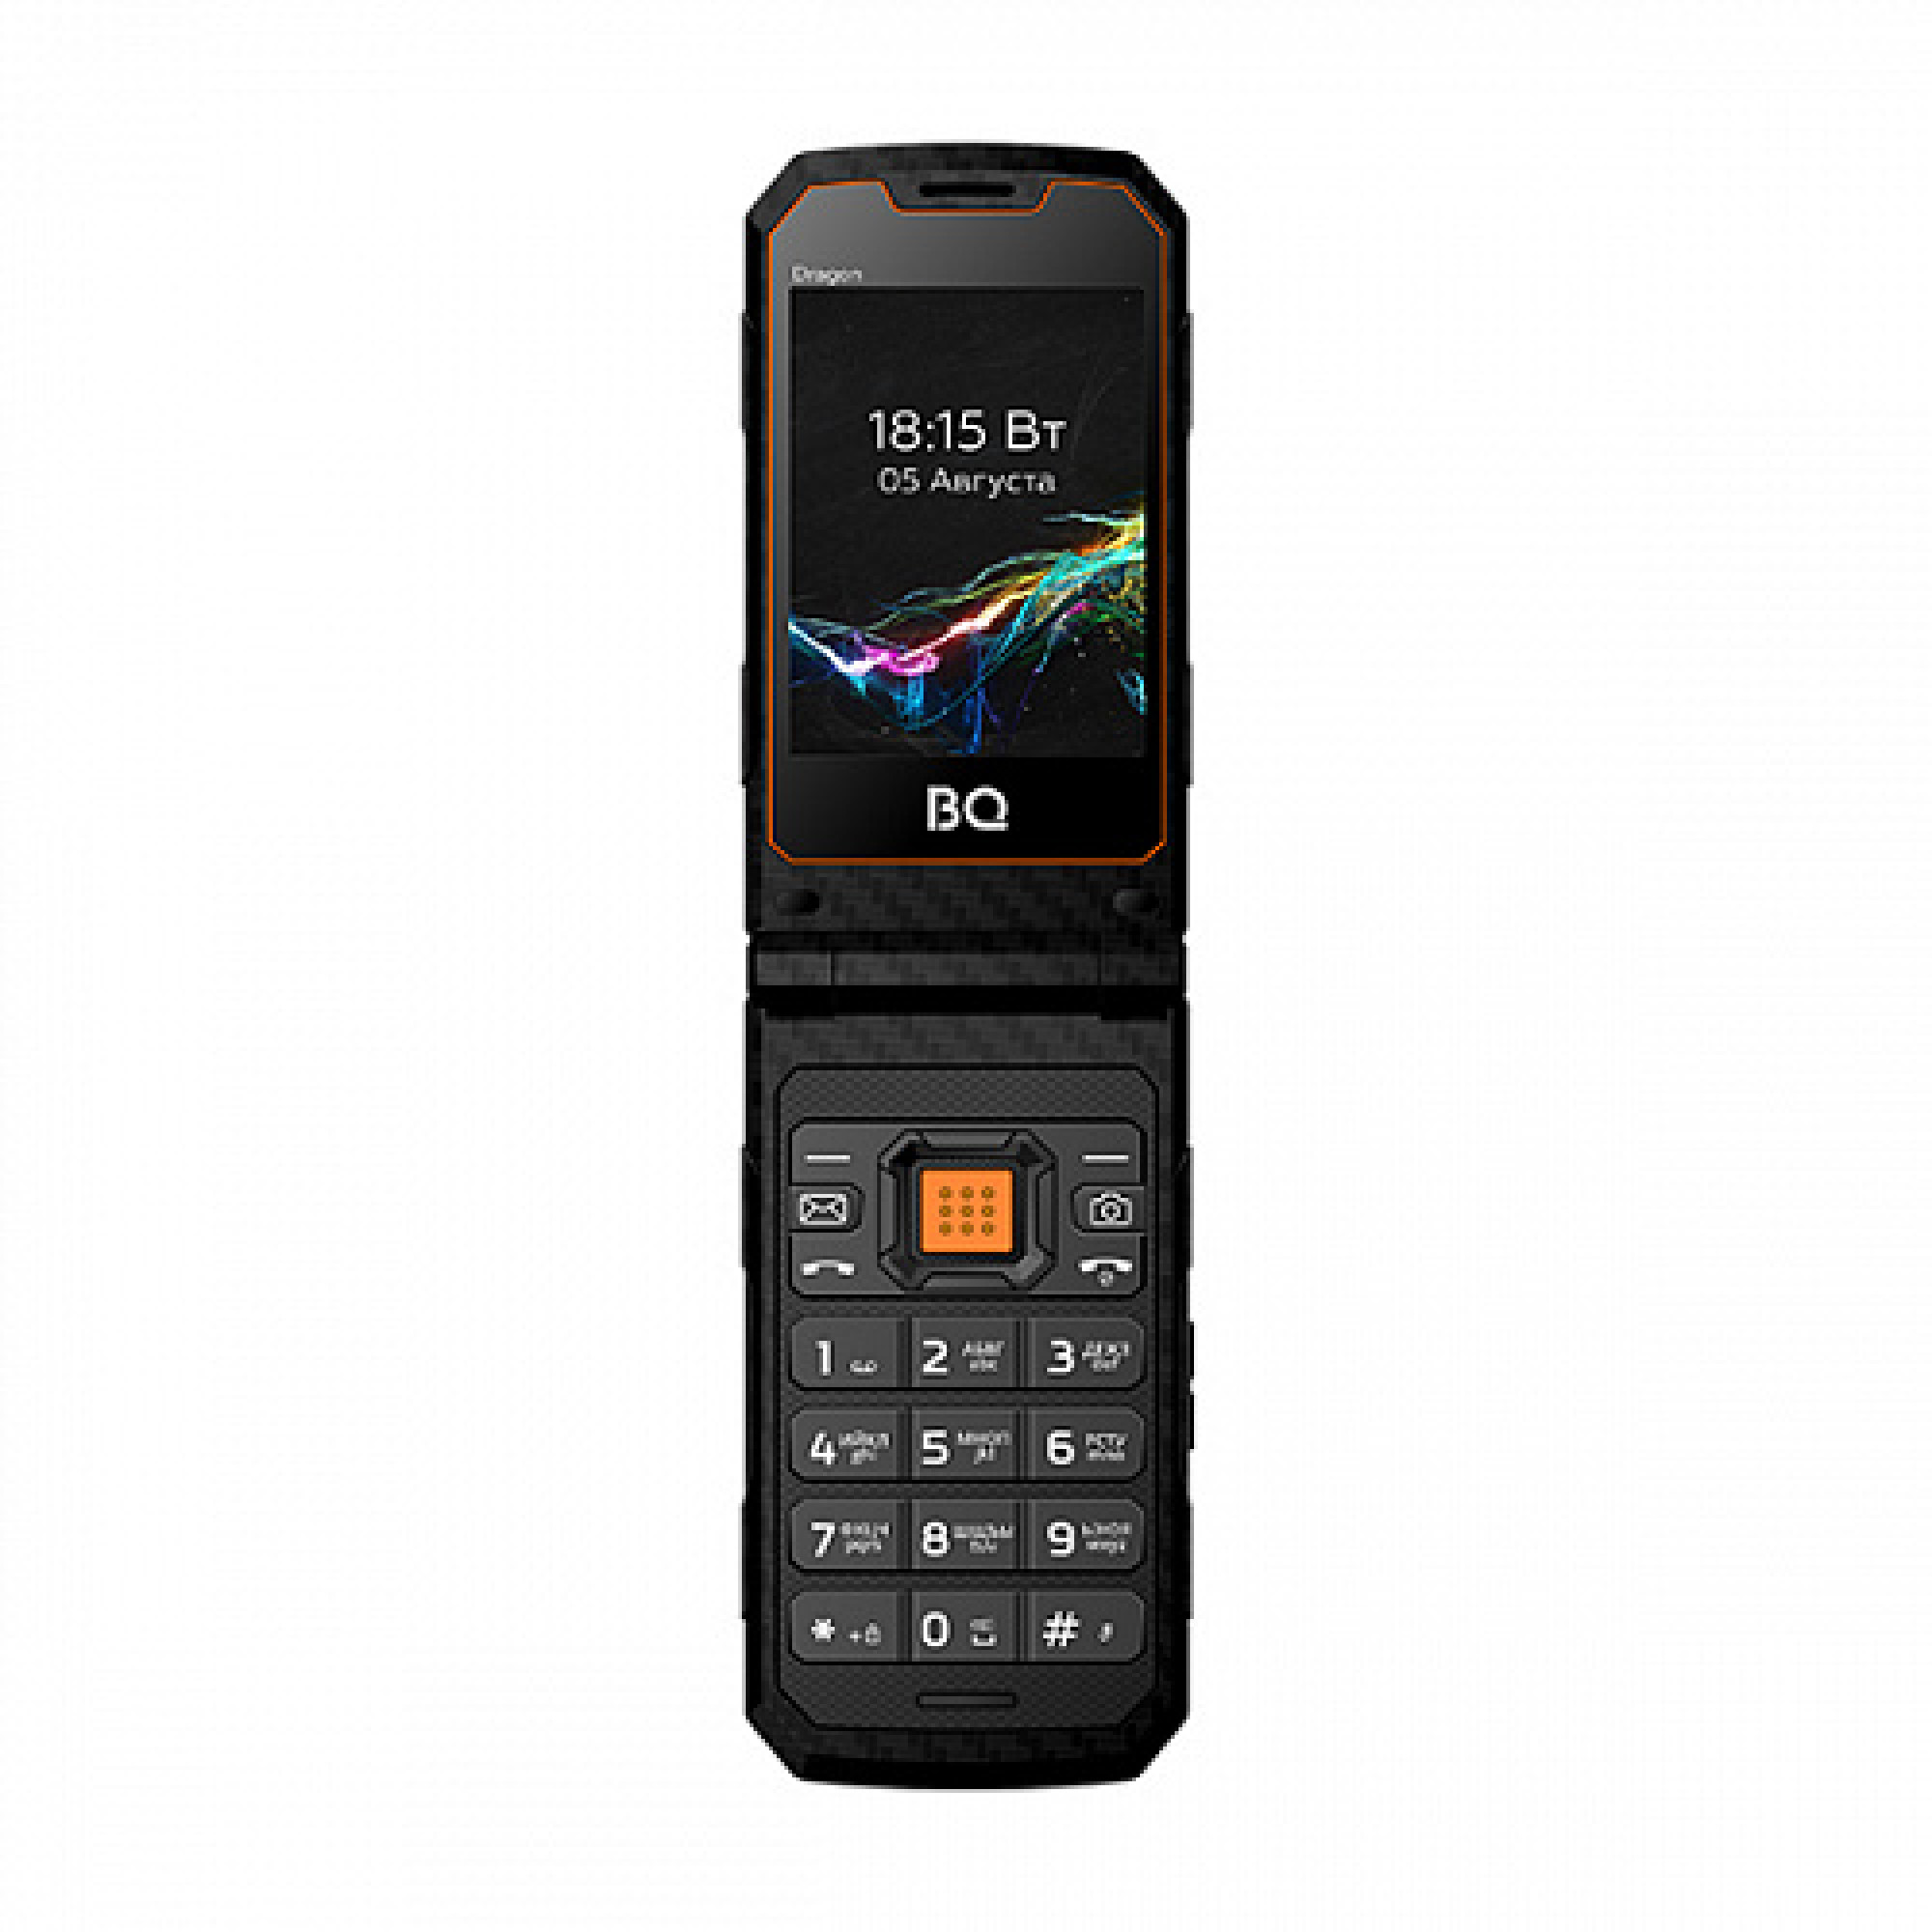 Мобильный телефон BQ BQ-2822 Dragon (черный)